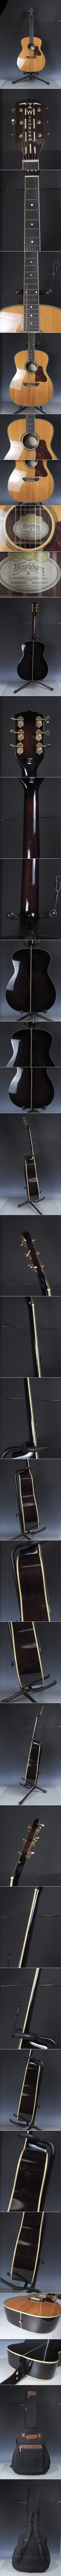 入荷bu85 美品 Washburn WSD5240SK アコースティックギター ワッシュバーン アコギ ケース付き その他